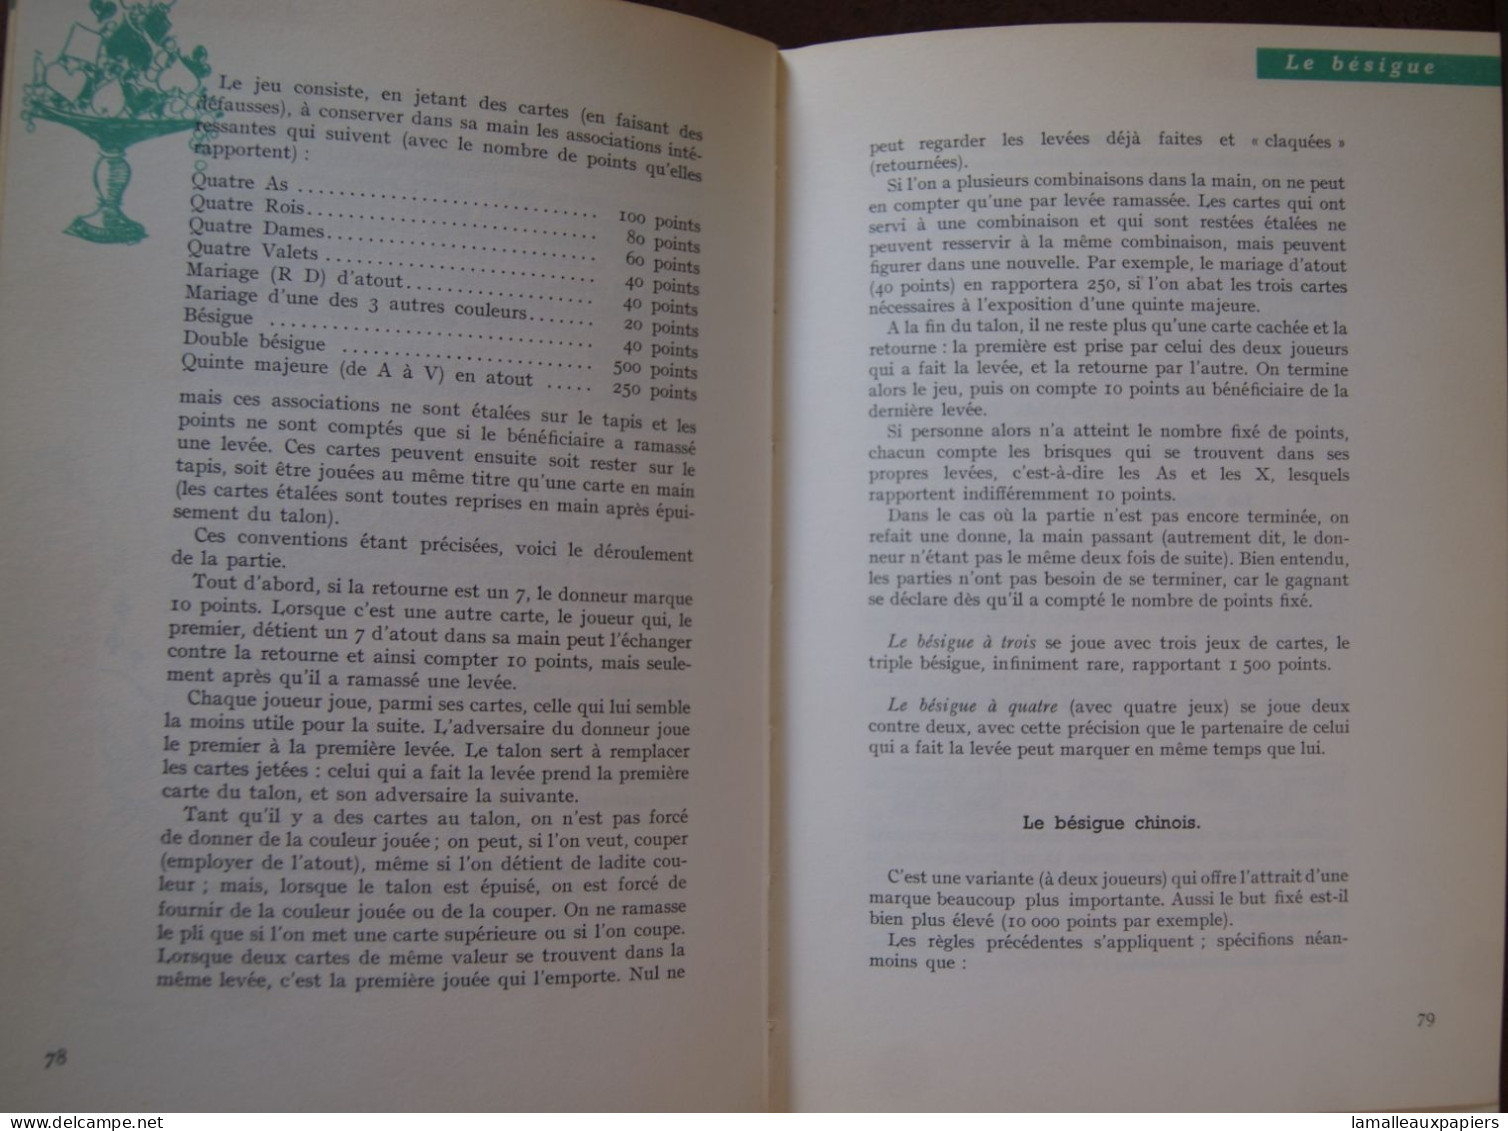 Le Code Des Jeux (Claude AVELINE) (1961) - Jeux De Société